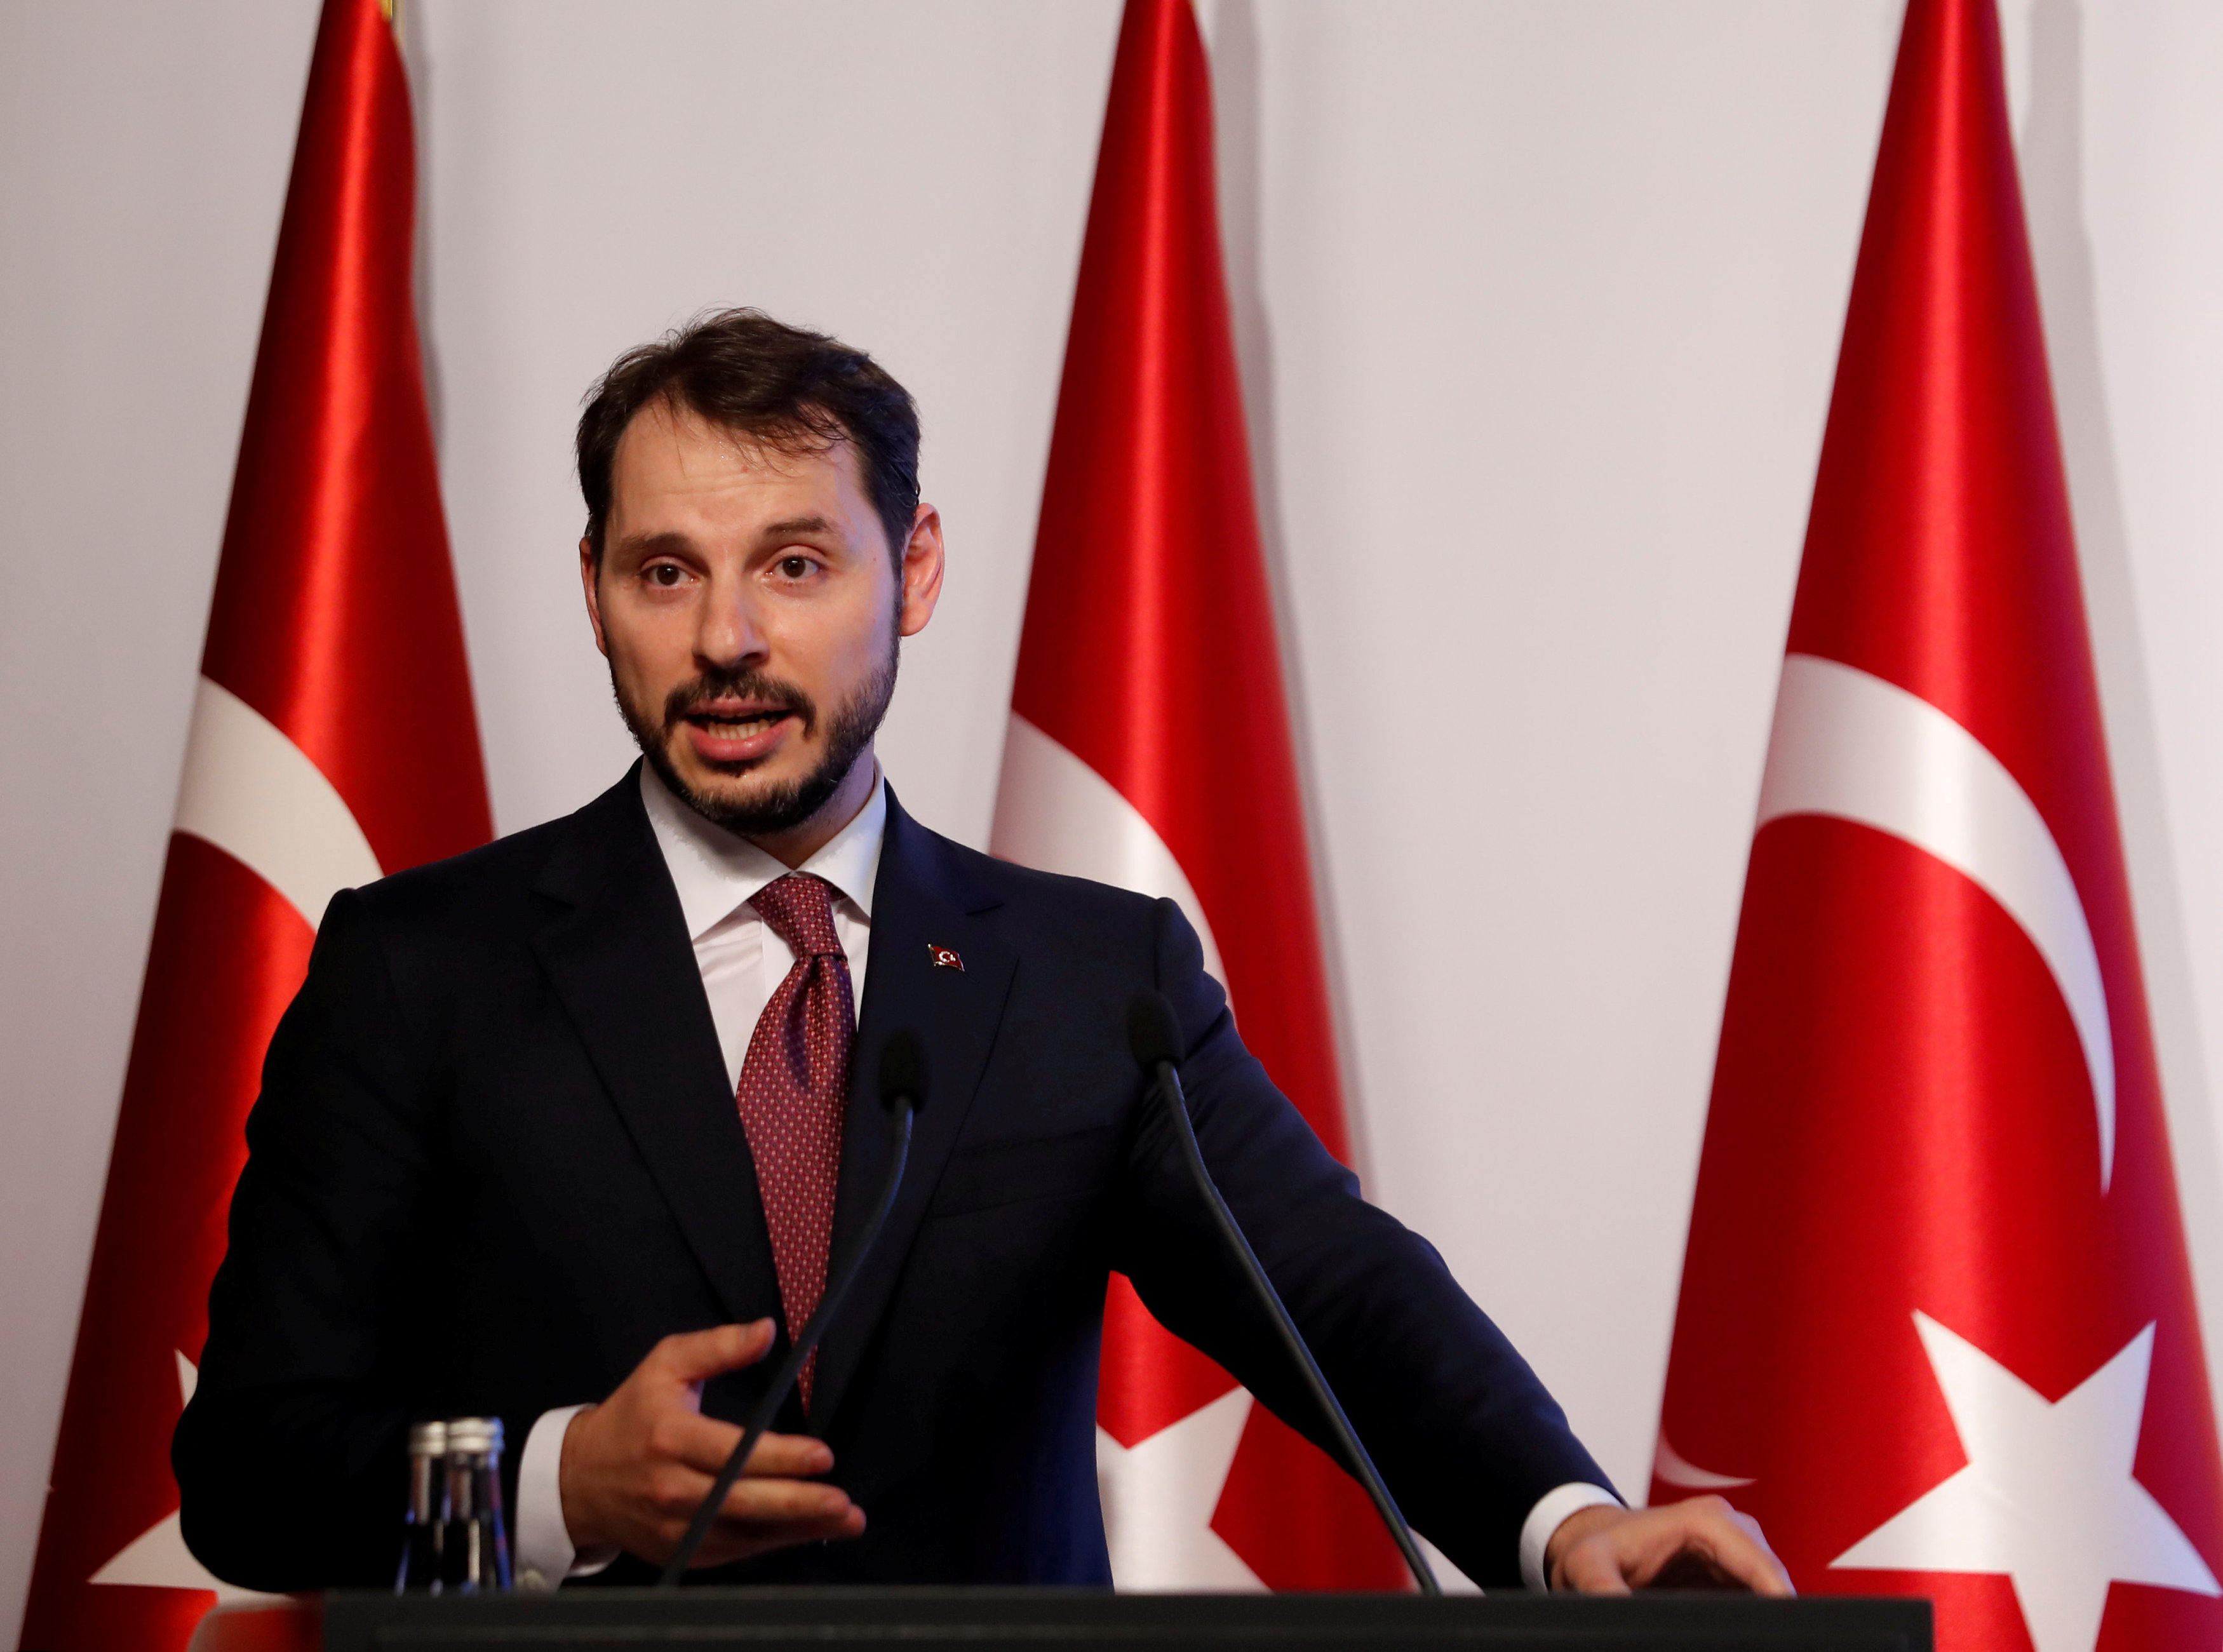 Τουρκία: Ικανές να αποσταθεροποιήσουν την περιοχή οι κυρώσεις των ΗΠΑ